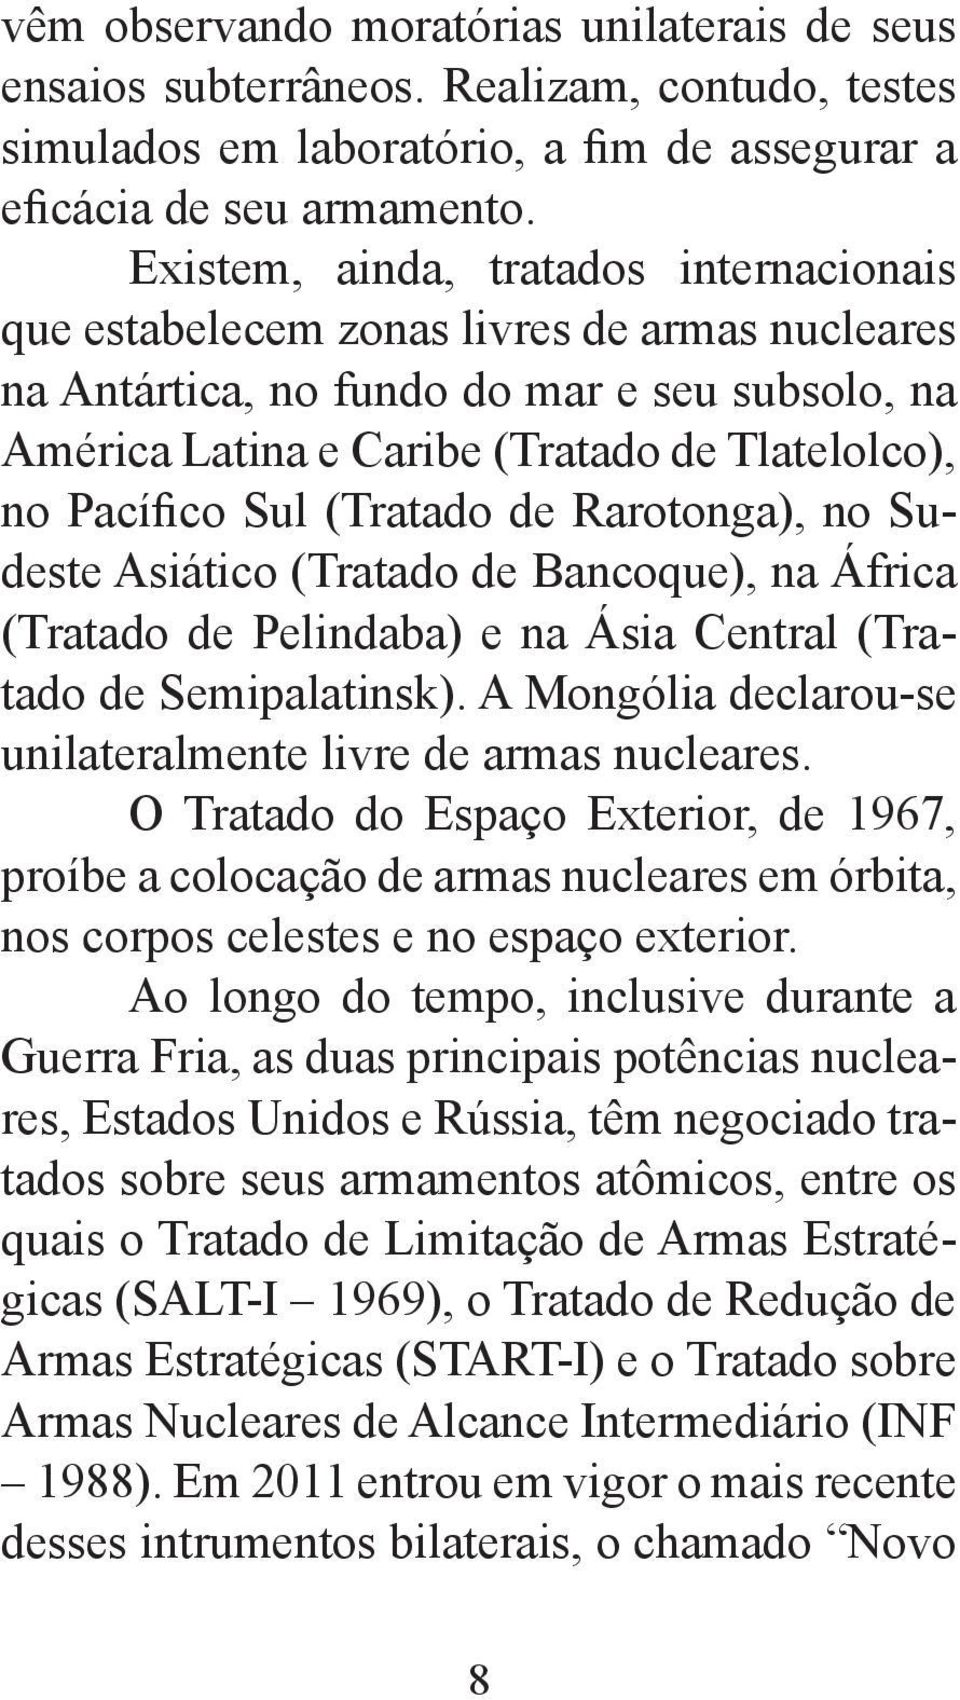 Sul (Tratado de Rarotonga), no Sudeste Asiático (Tratado de Bancoque), na África (Tratado de Pelindaba) e na Ásia Central (Tratado de Semipalatinsk).